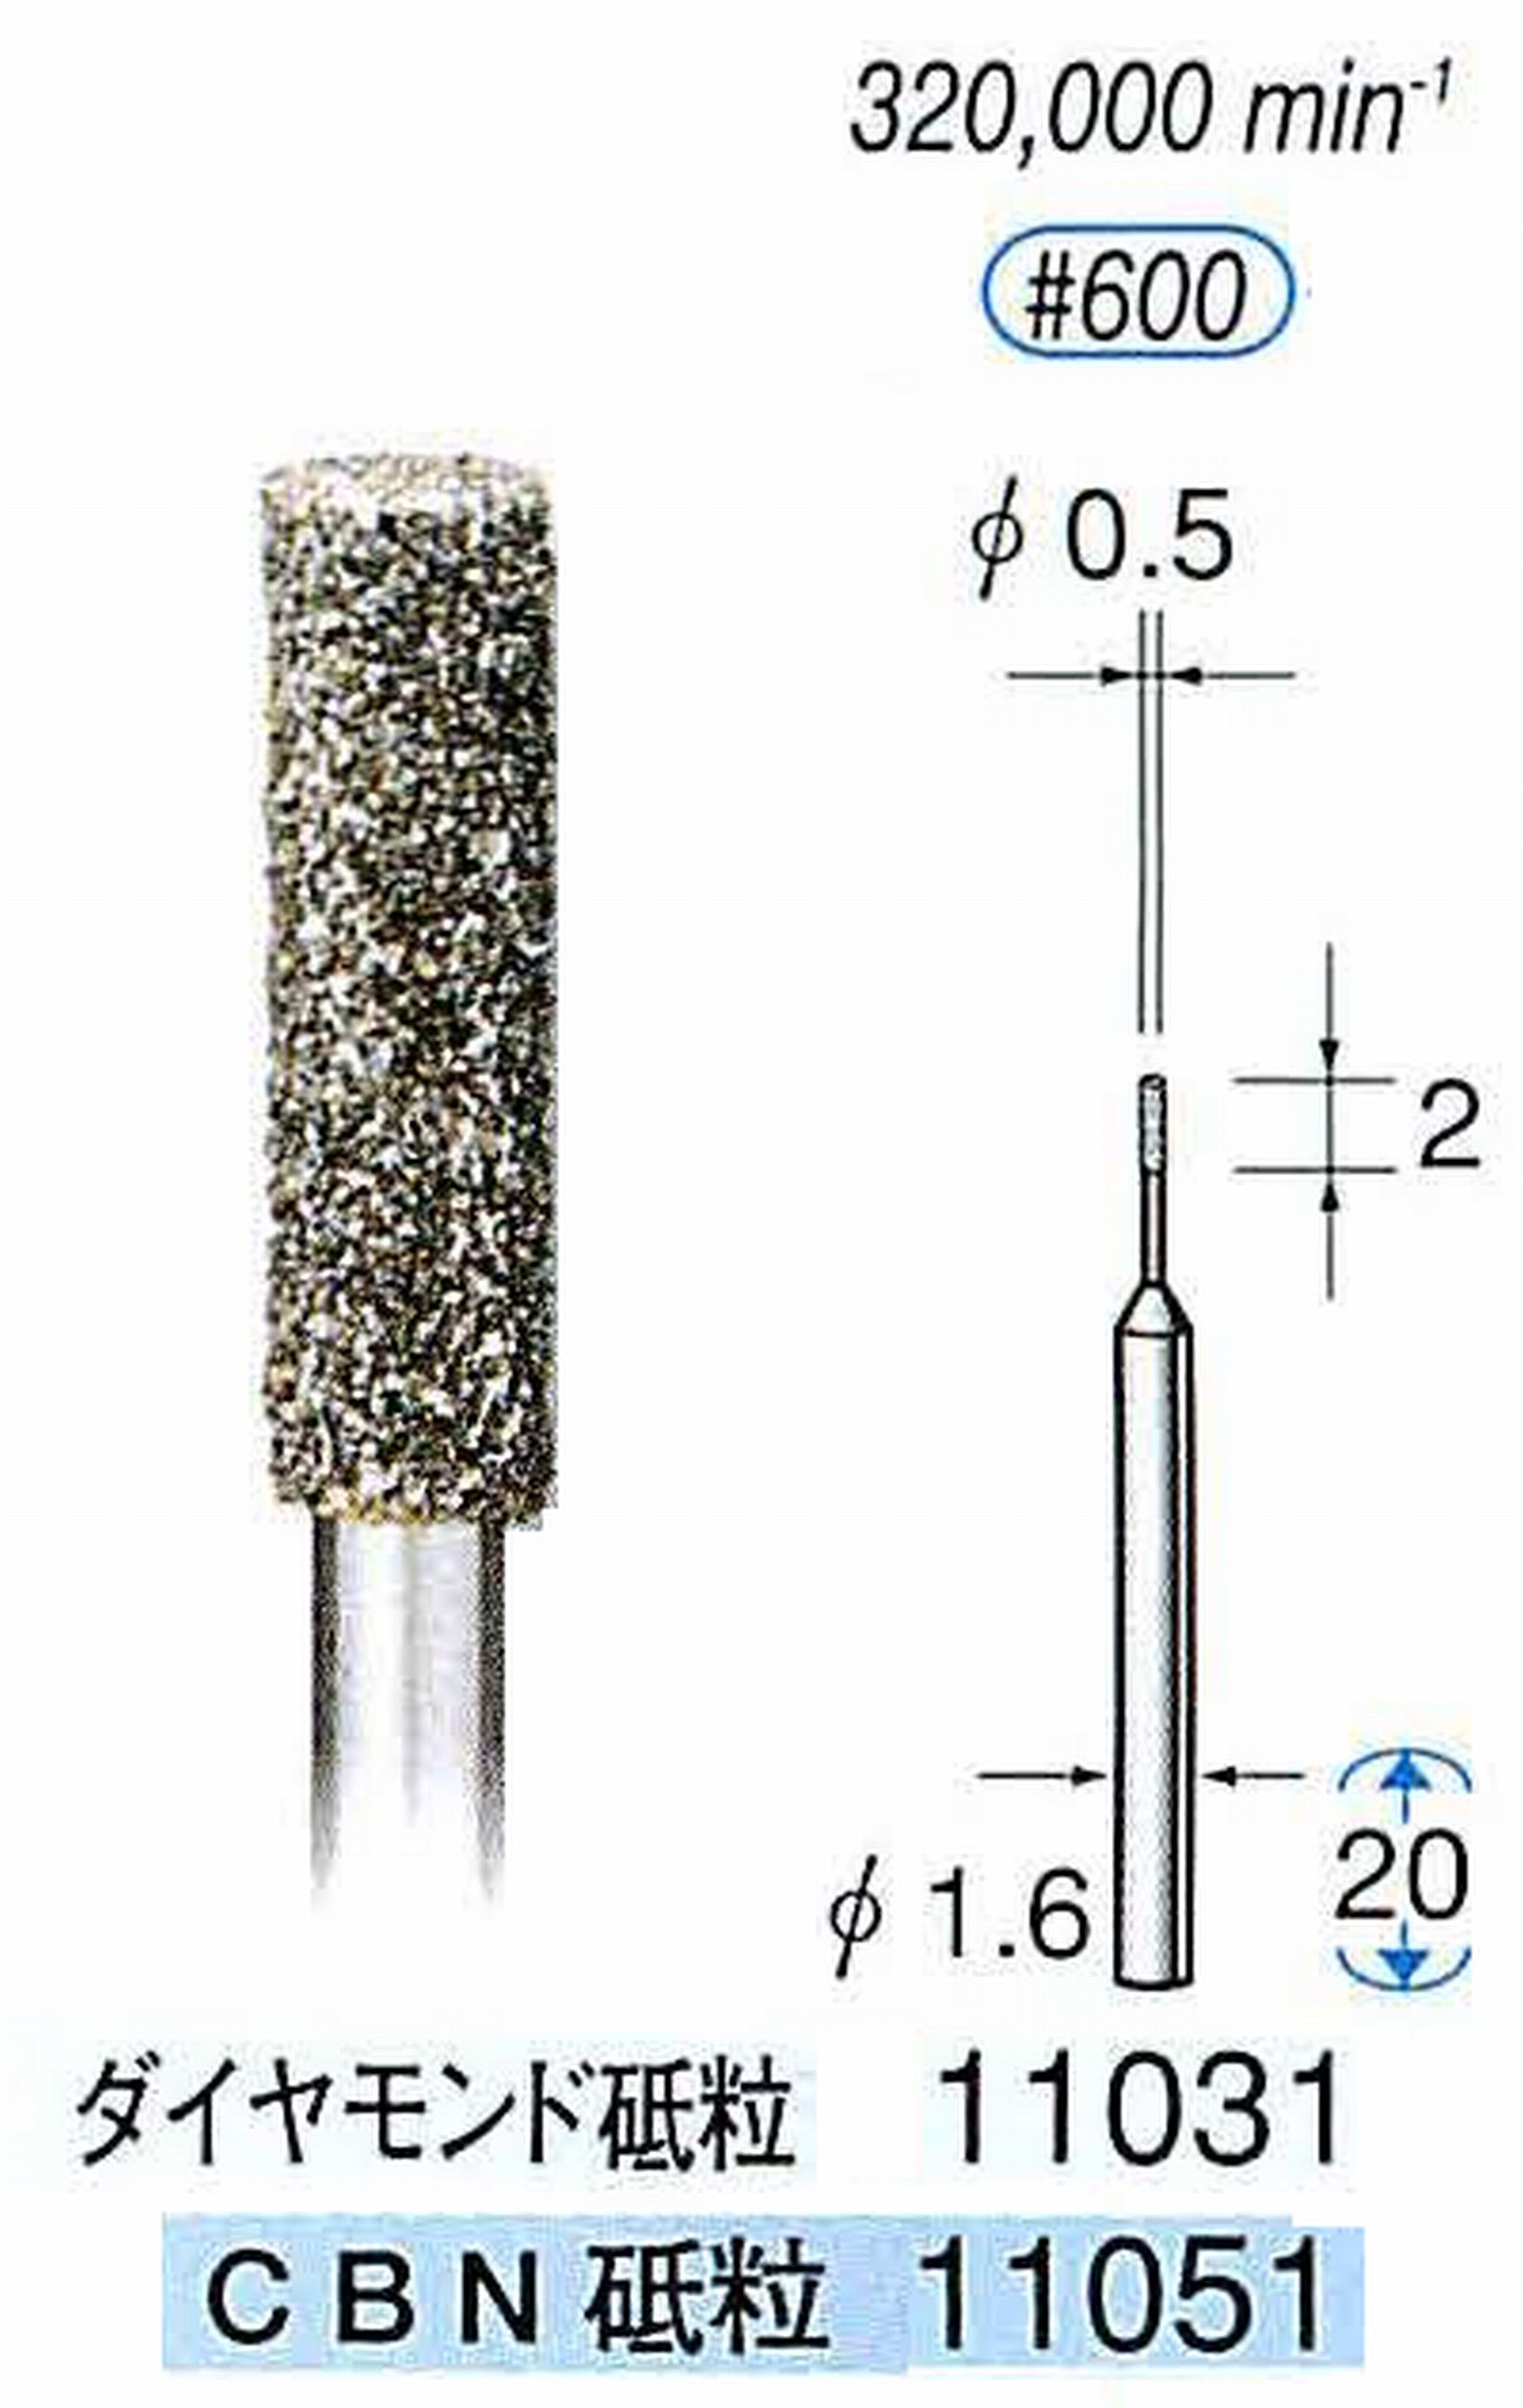 ナカニシ/NAKANISHI 電着ダイヤモンドバー(ミニチュアタイプ)ダイヤモンド砥粒 軸径(シャンク)φ1.6mm 11031